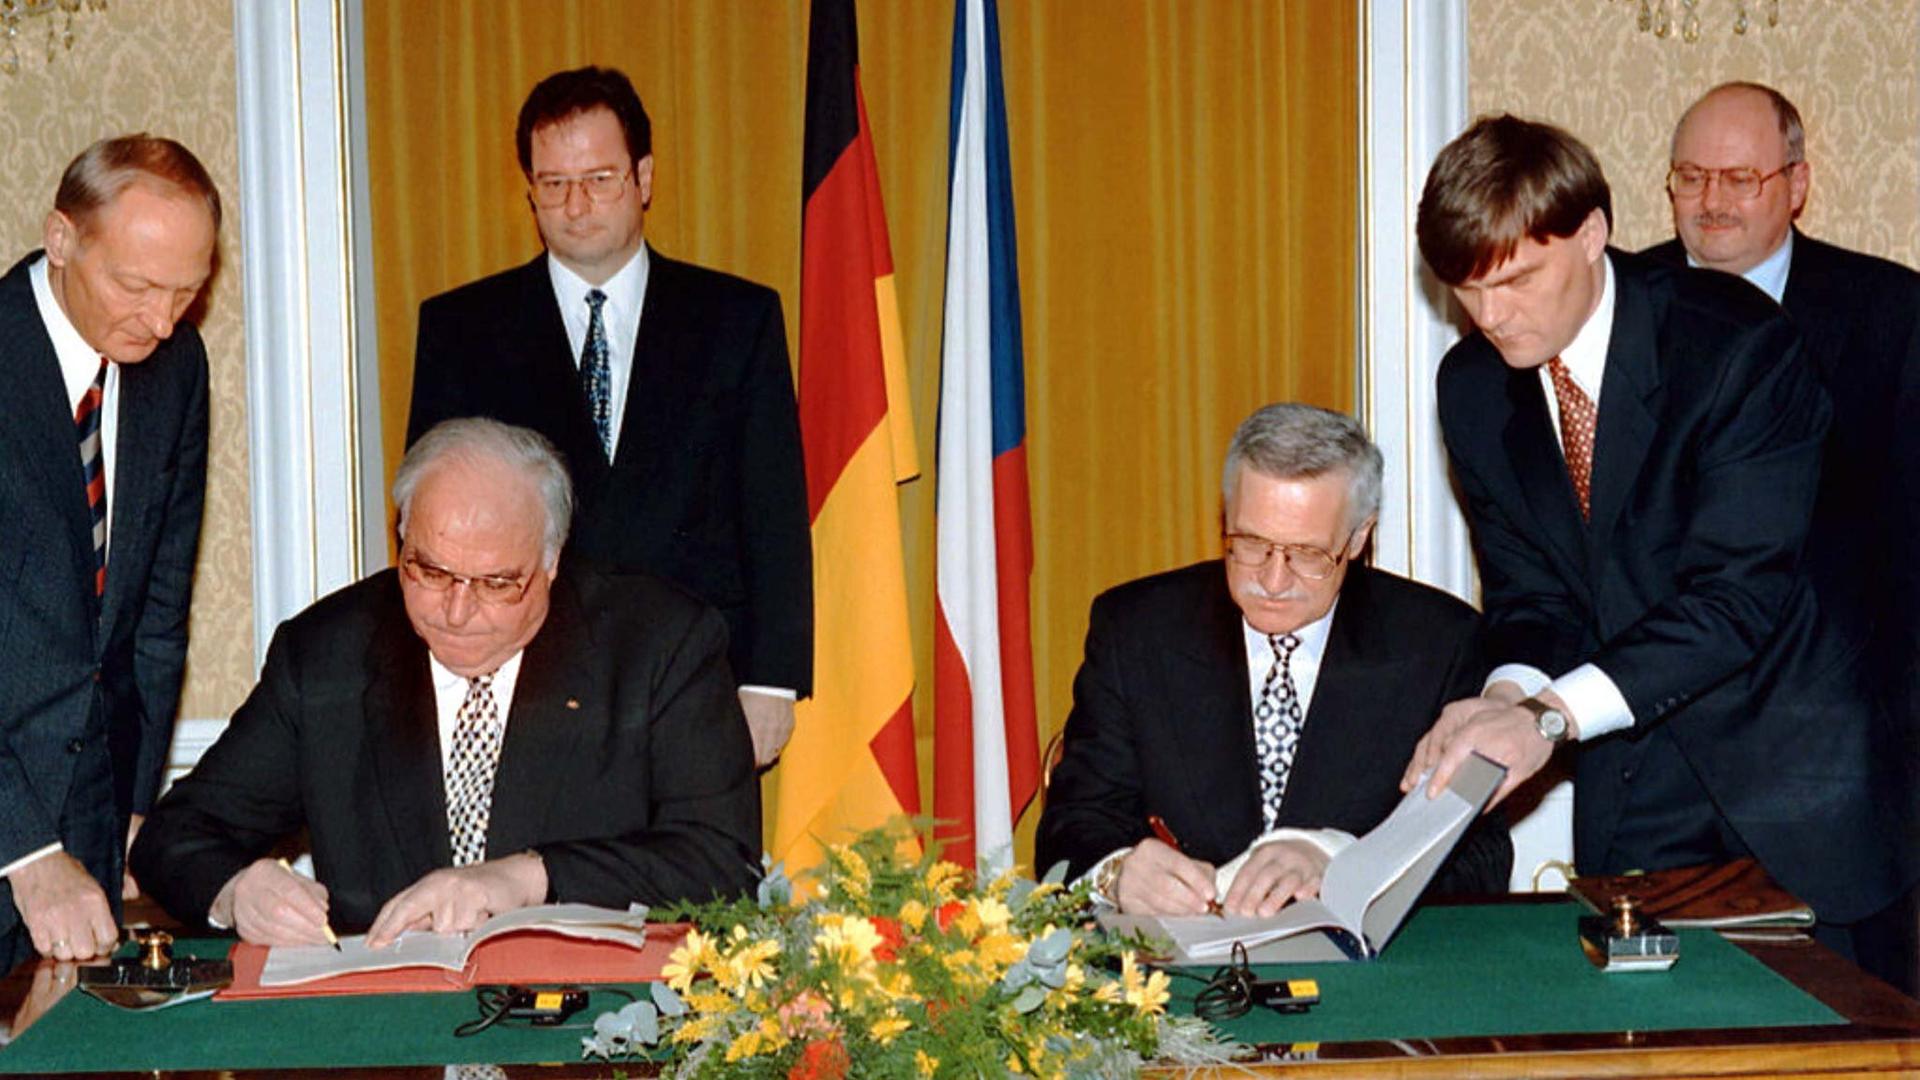 Deutsch-tschechische Erklärung vor 25 Jahren - Mit der Vergangenheit leben, die Zukunft gestalten